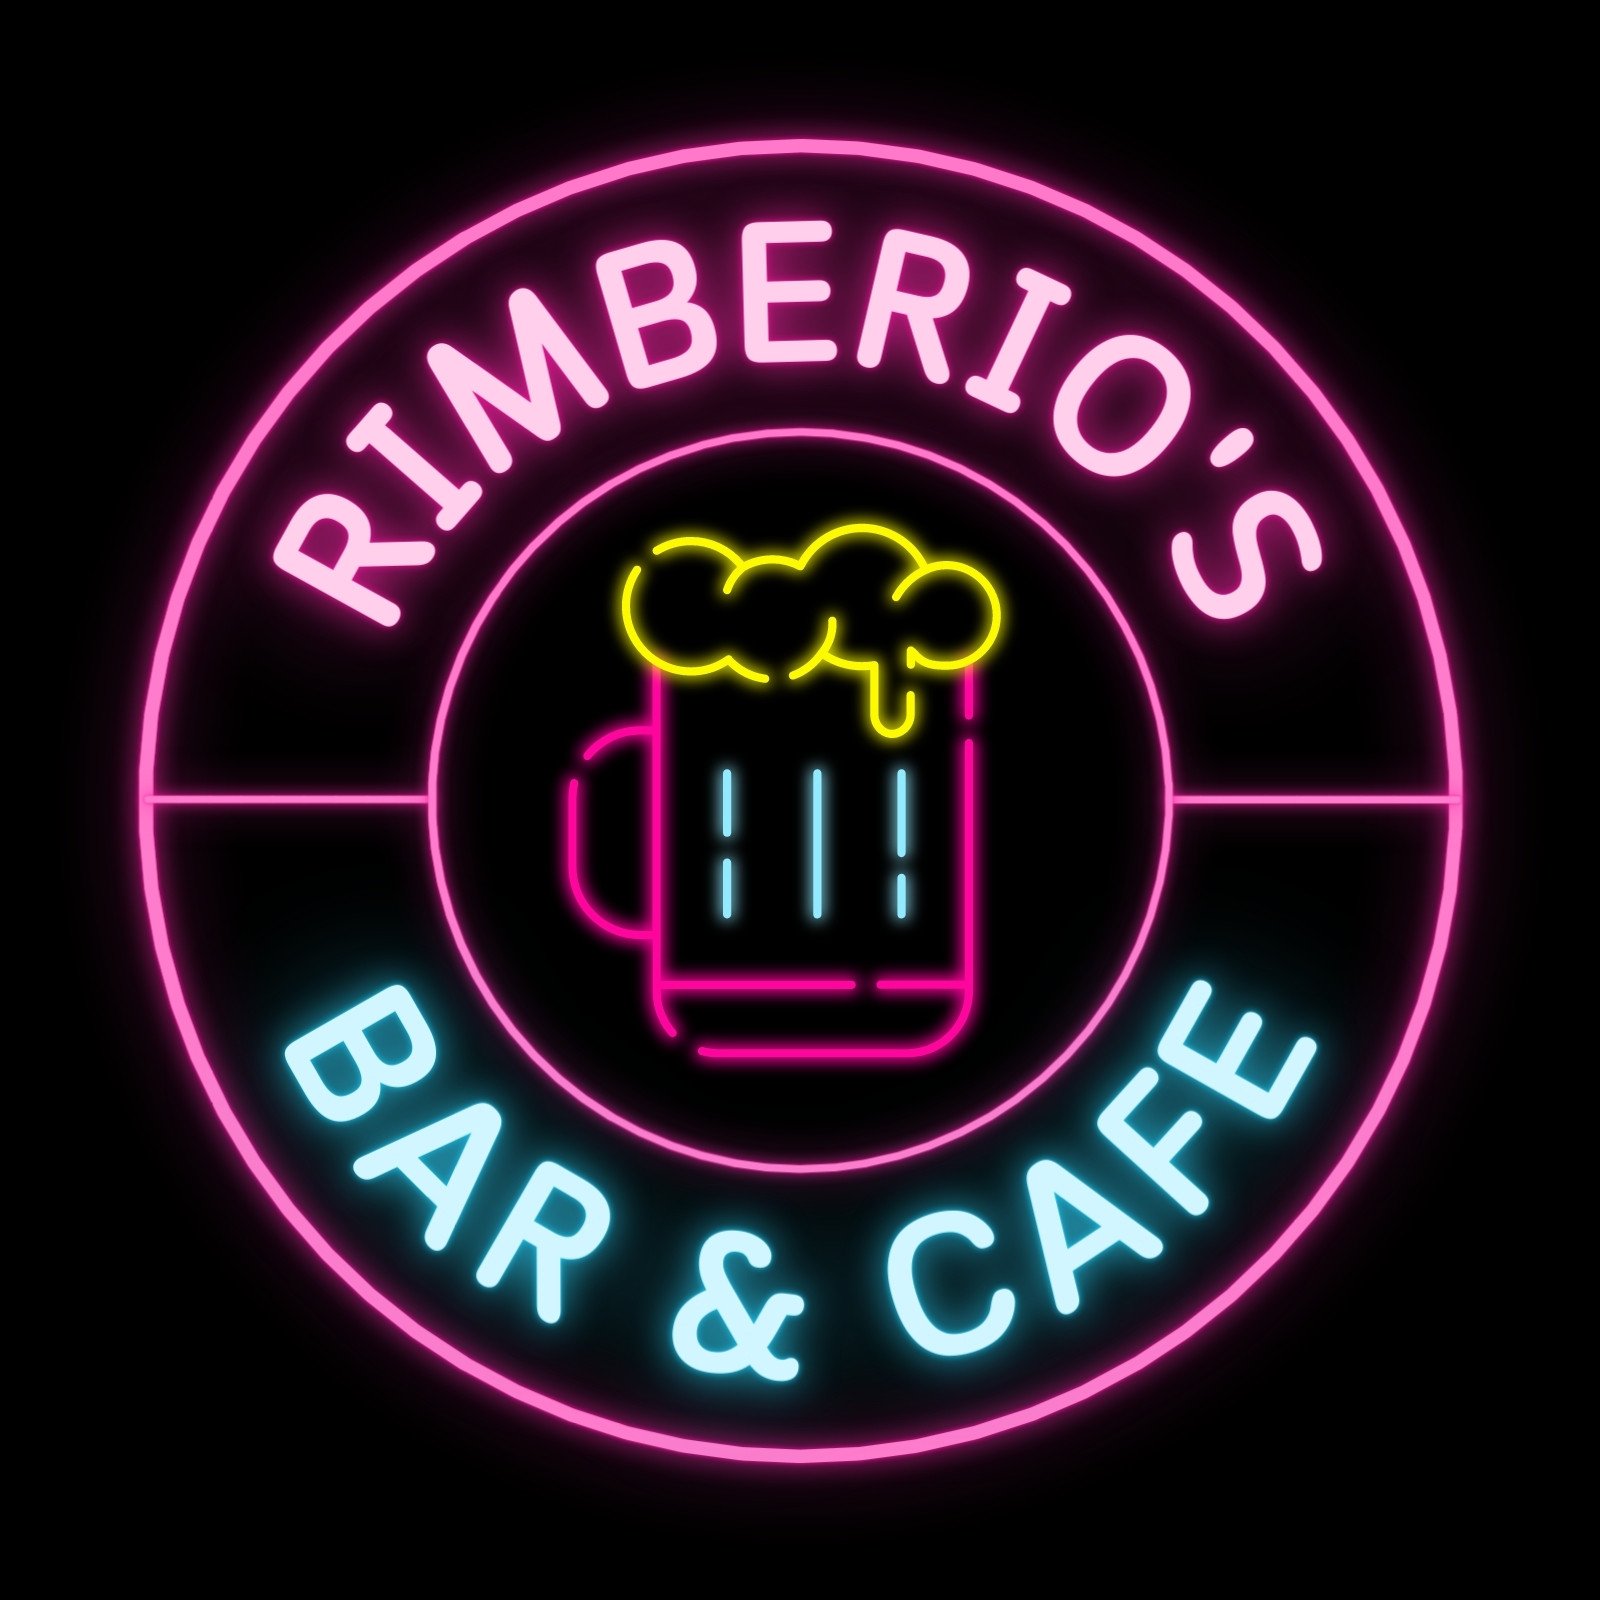 Pink Neon Beer Mug Illustration Bar and Cafe Logo